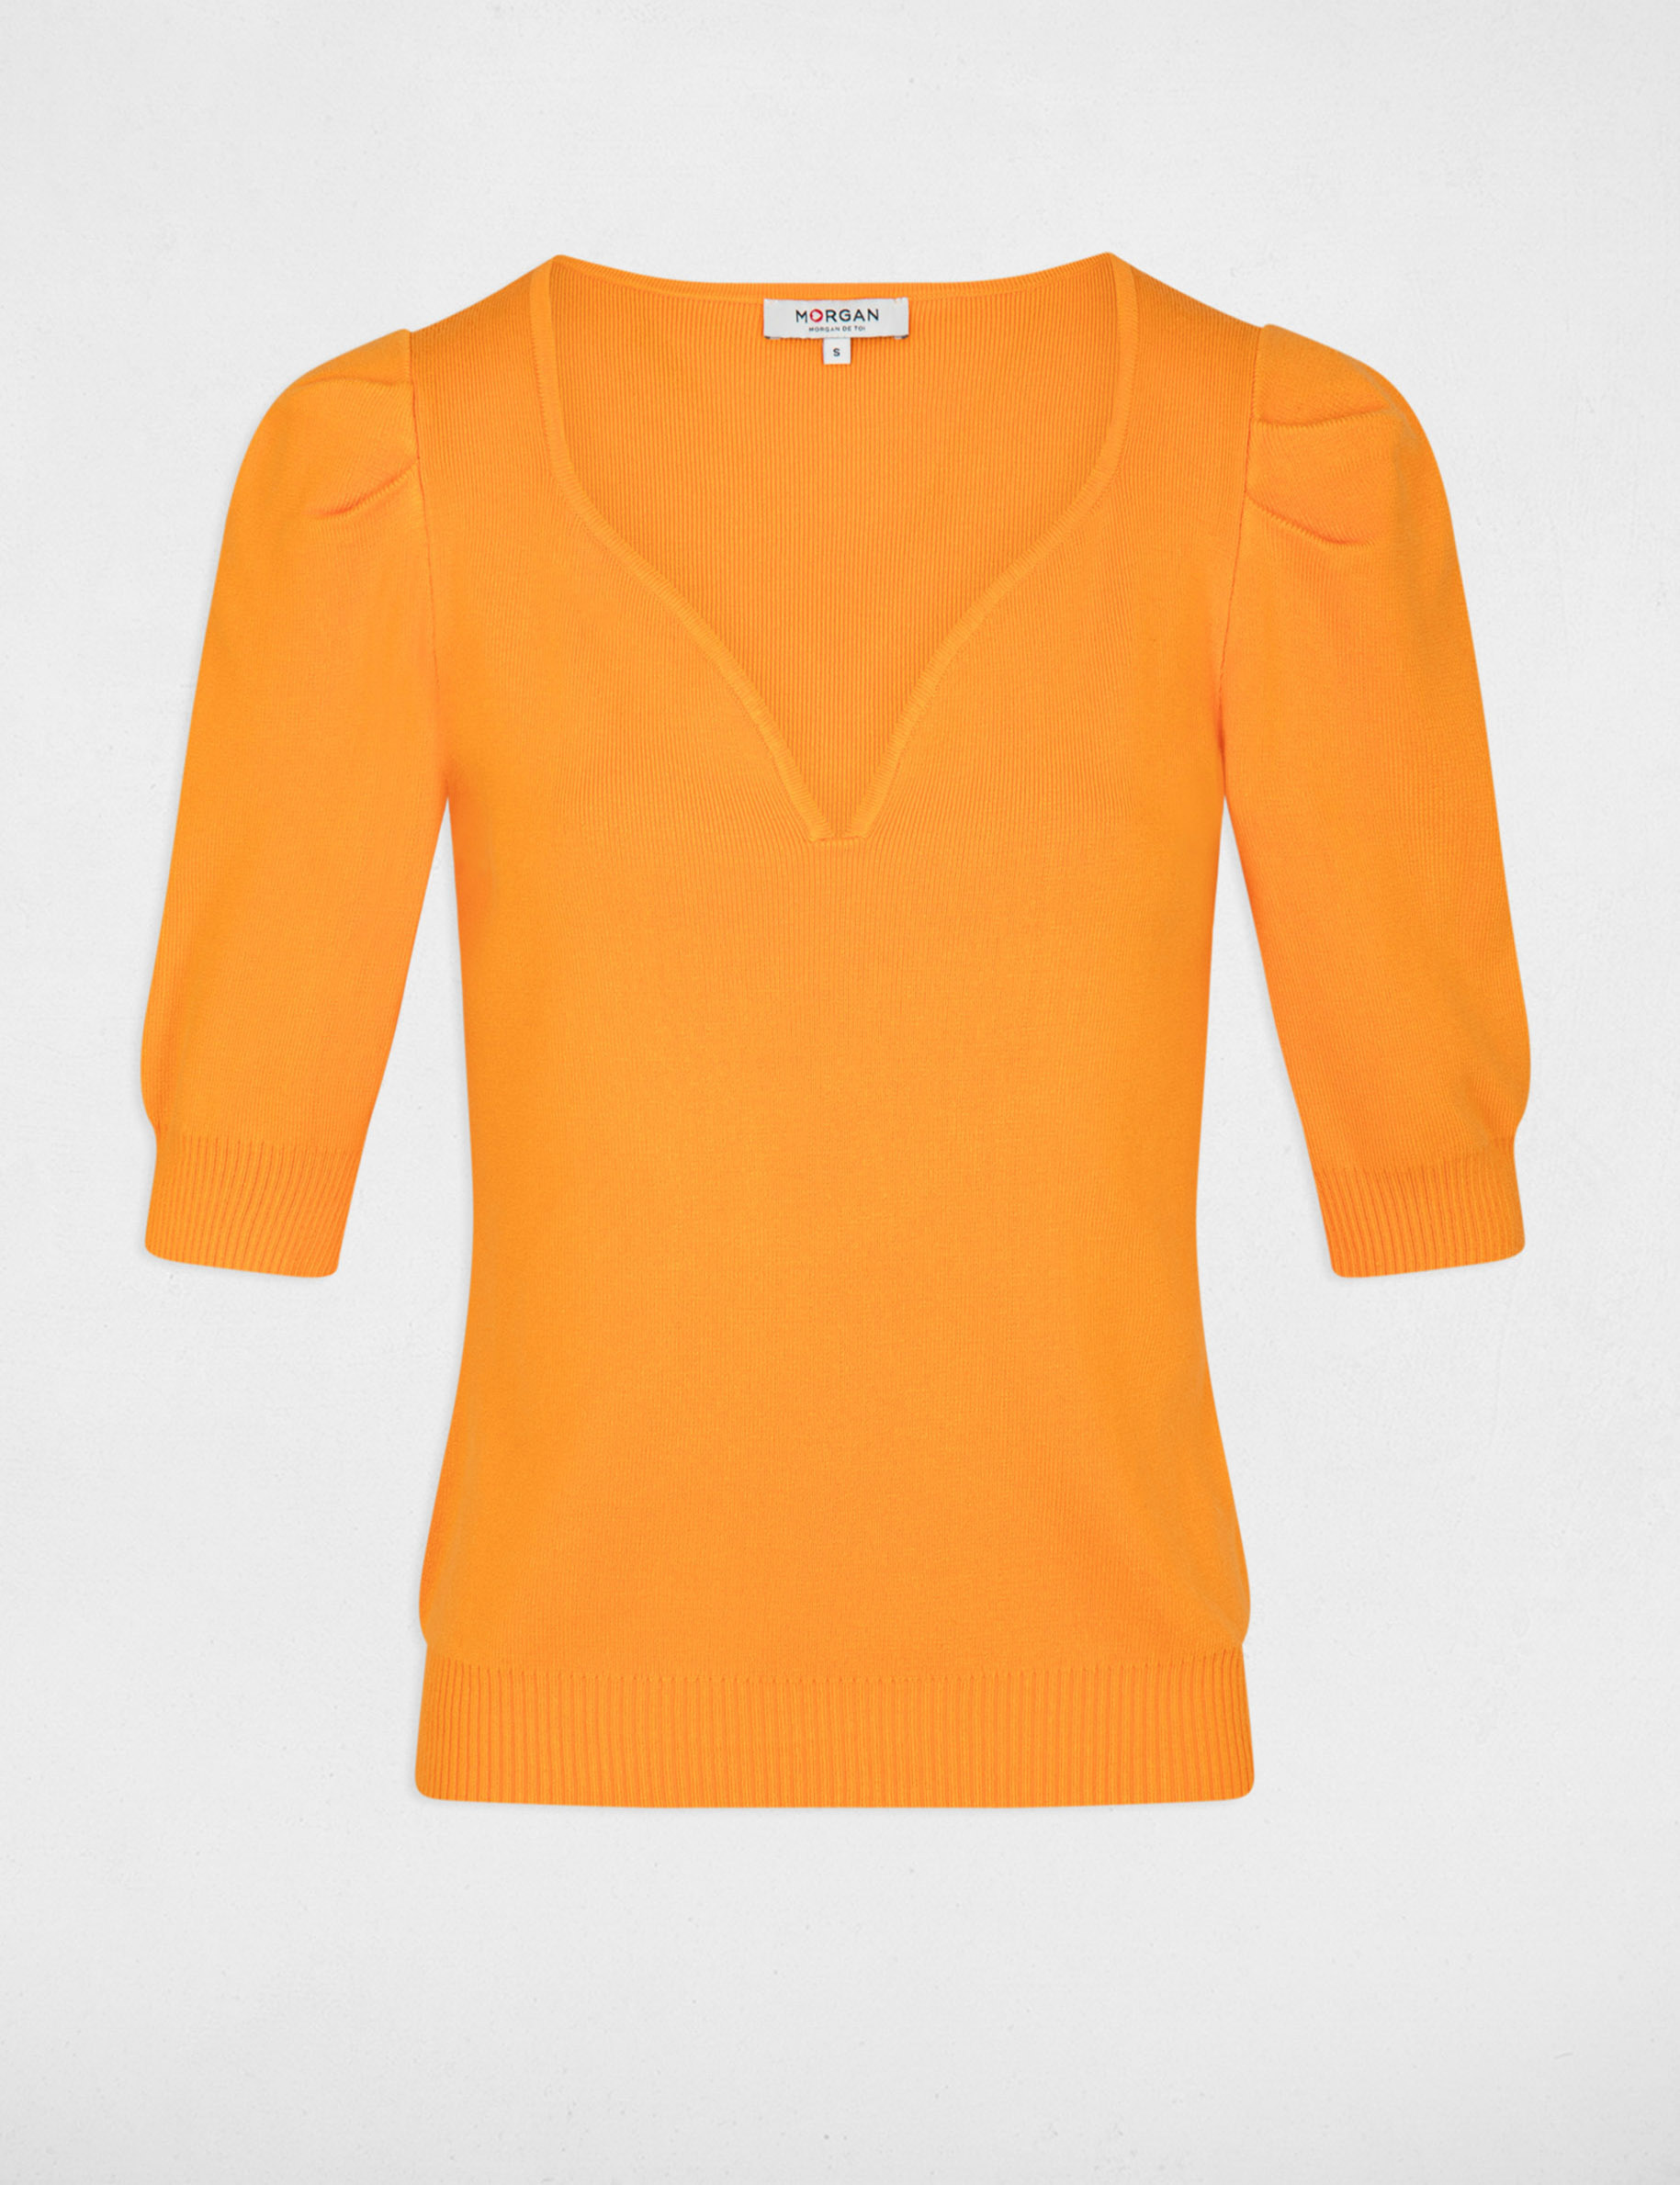 Jumper V-neck short sleeves orange ladies'